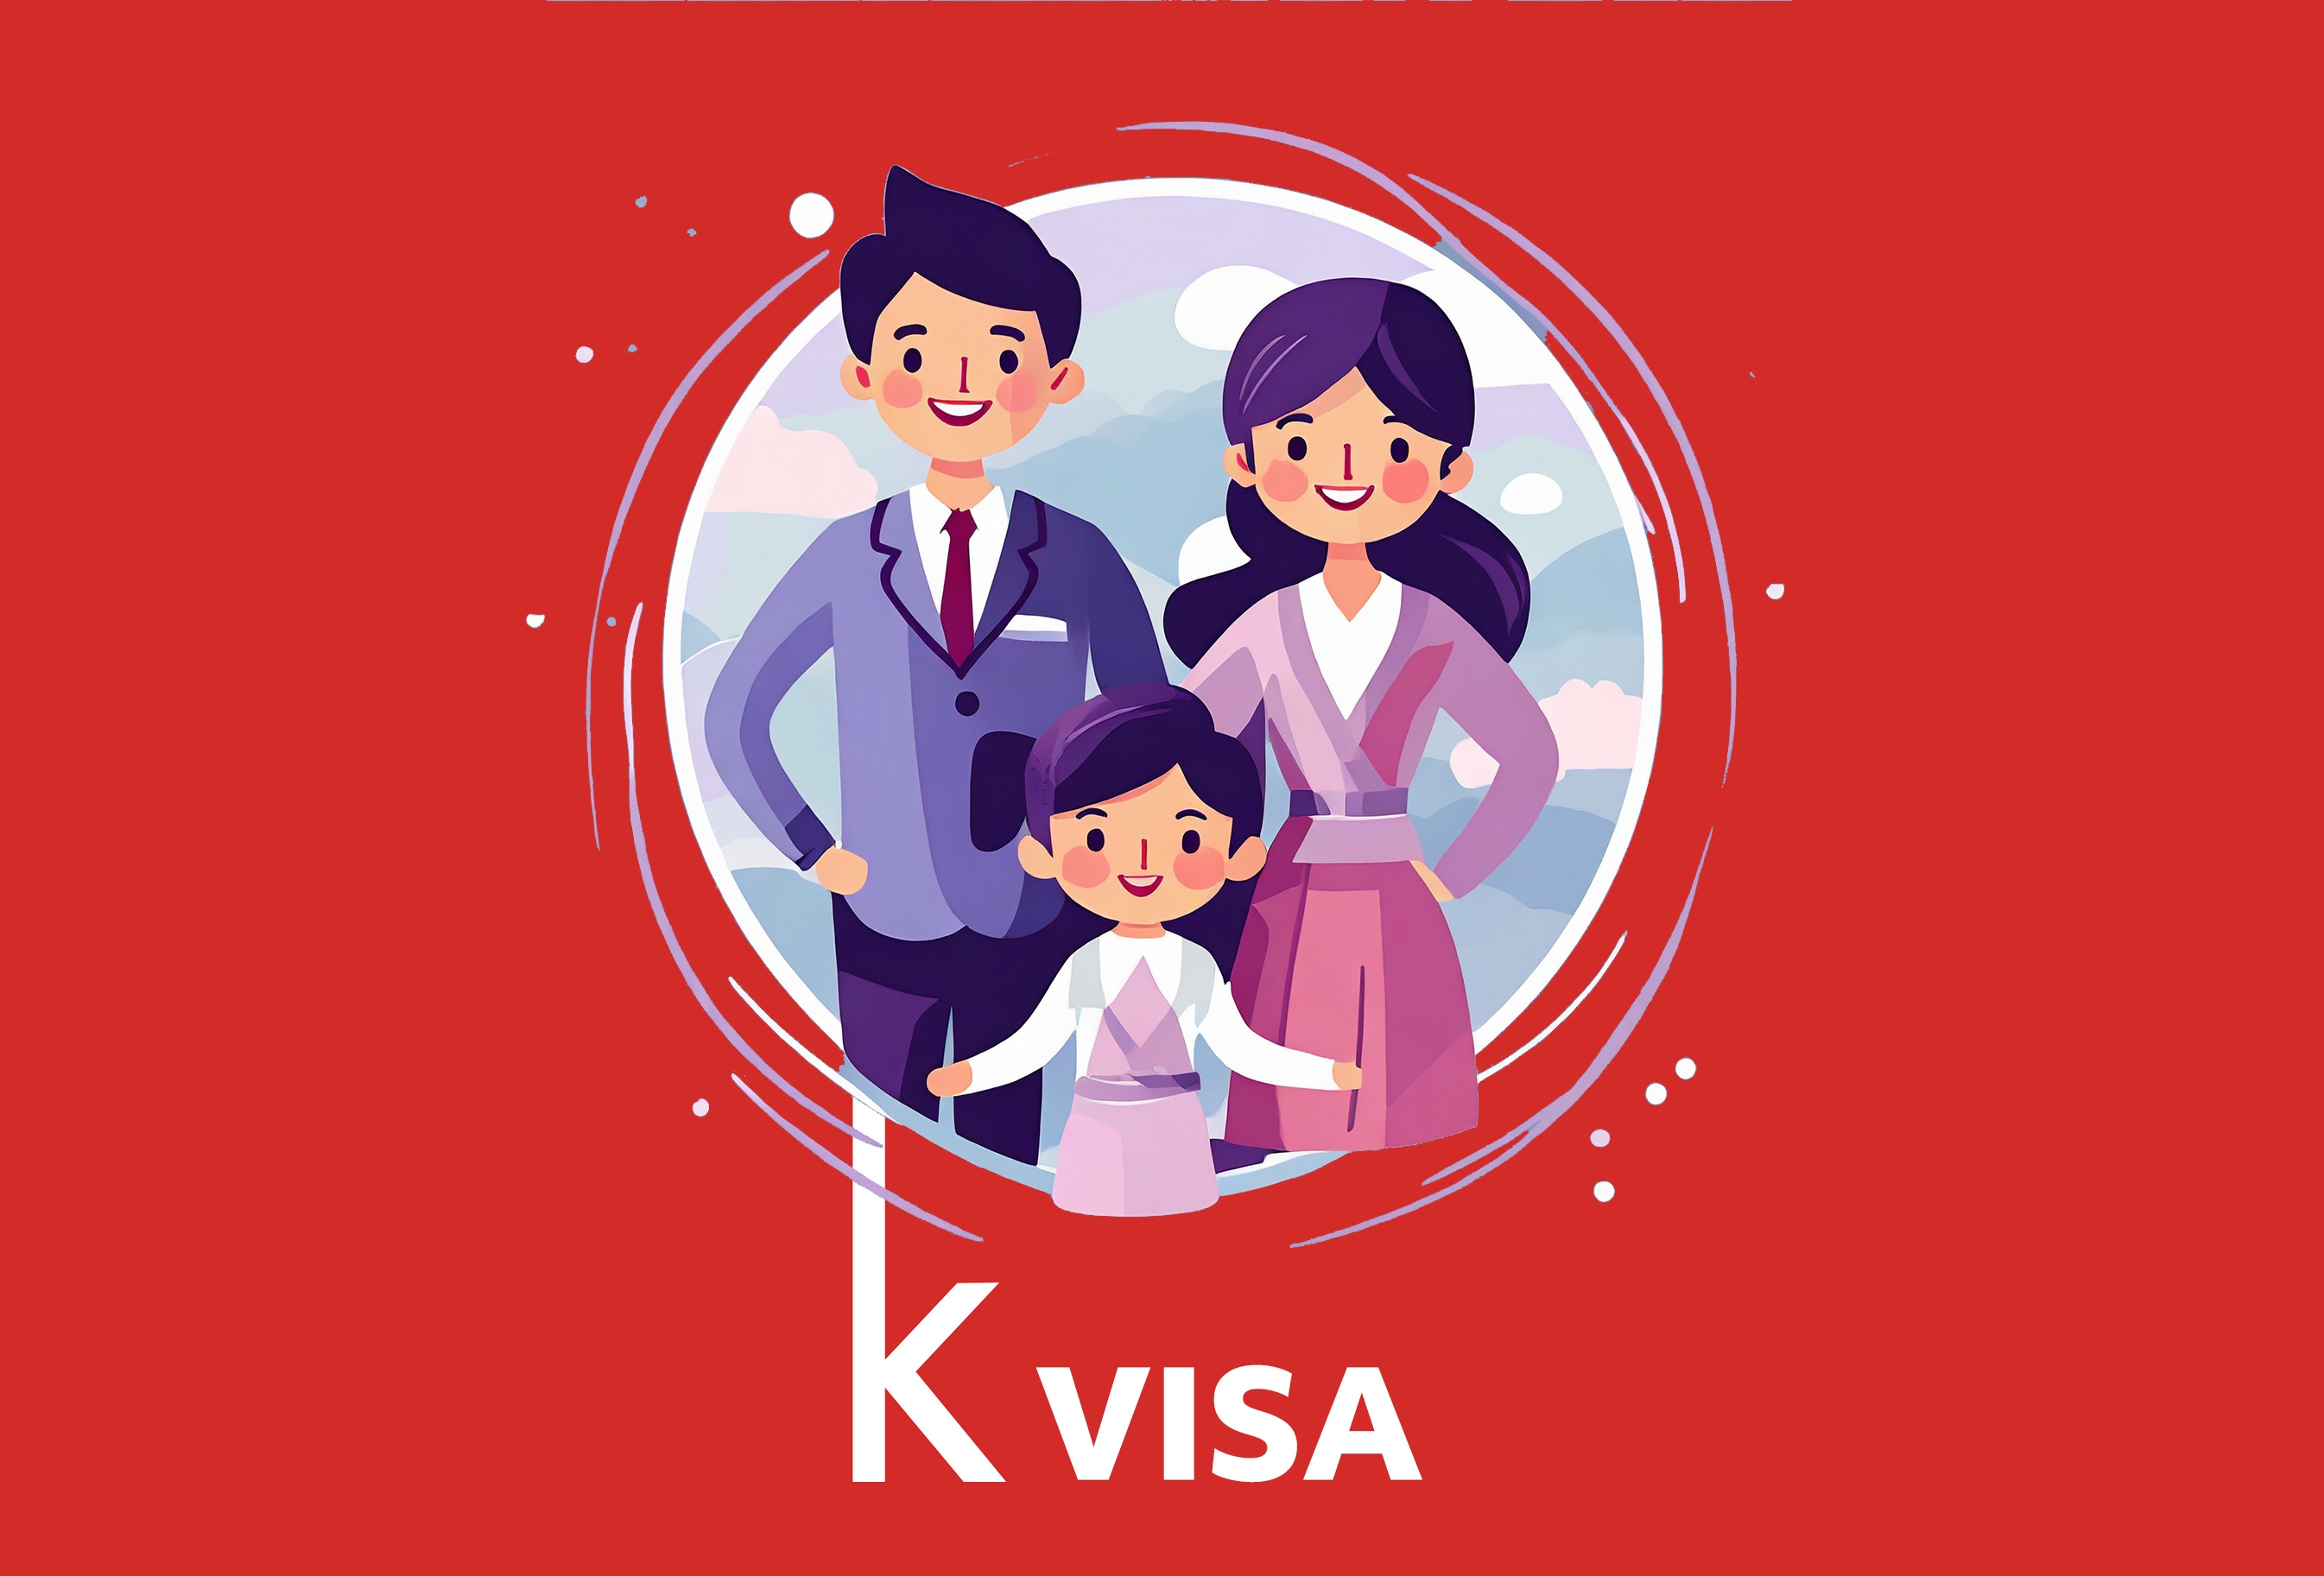 F-1 Visa profile.jpg